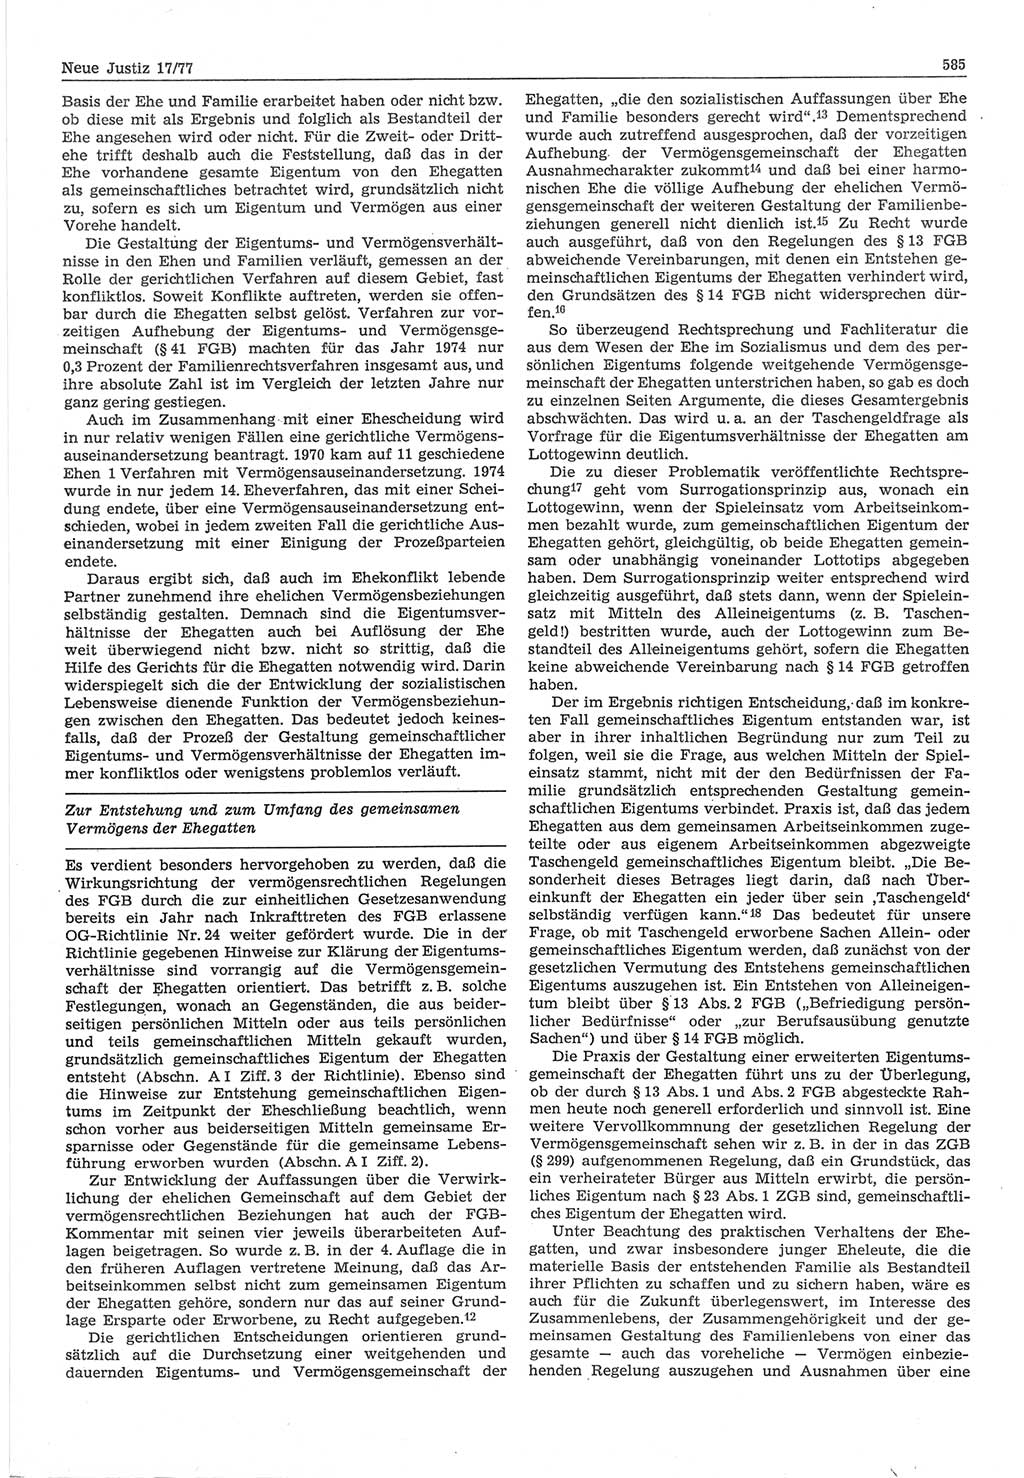 Neue Justiz (NJ), Zeitschrift für Recht und Rechtswissenschaft-Zeitschrift, sozialistisches Recht und Gesetzlichkeit, 31. Jahrgang 1977, Seite 585 (NJ DDR 1977, S. 585)